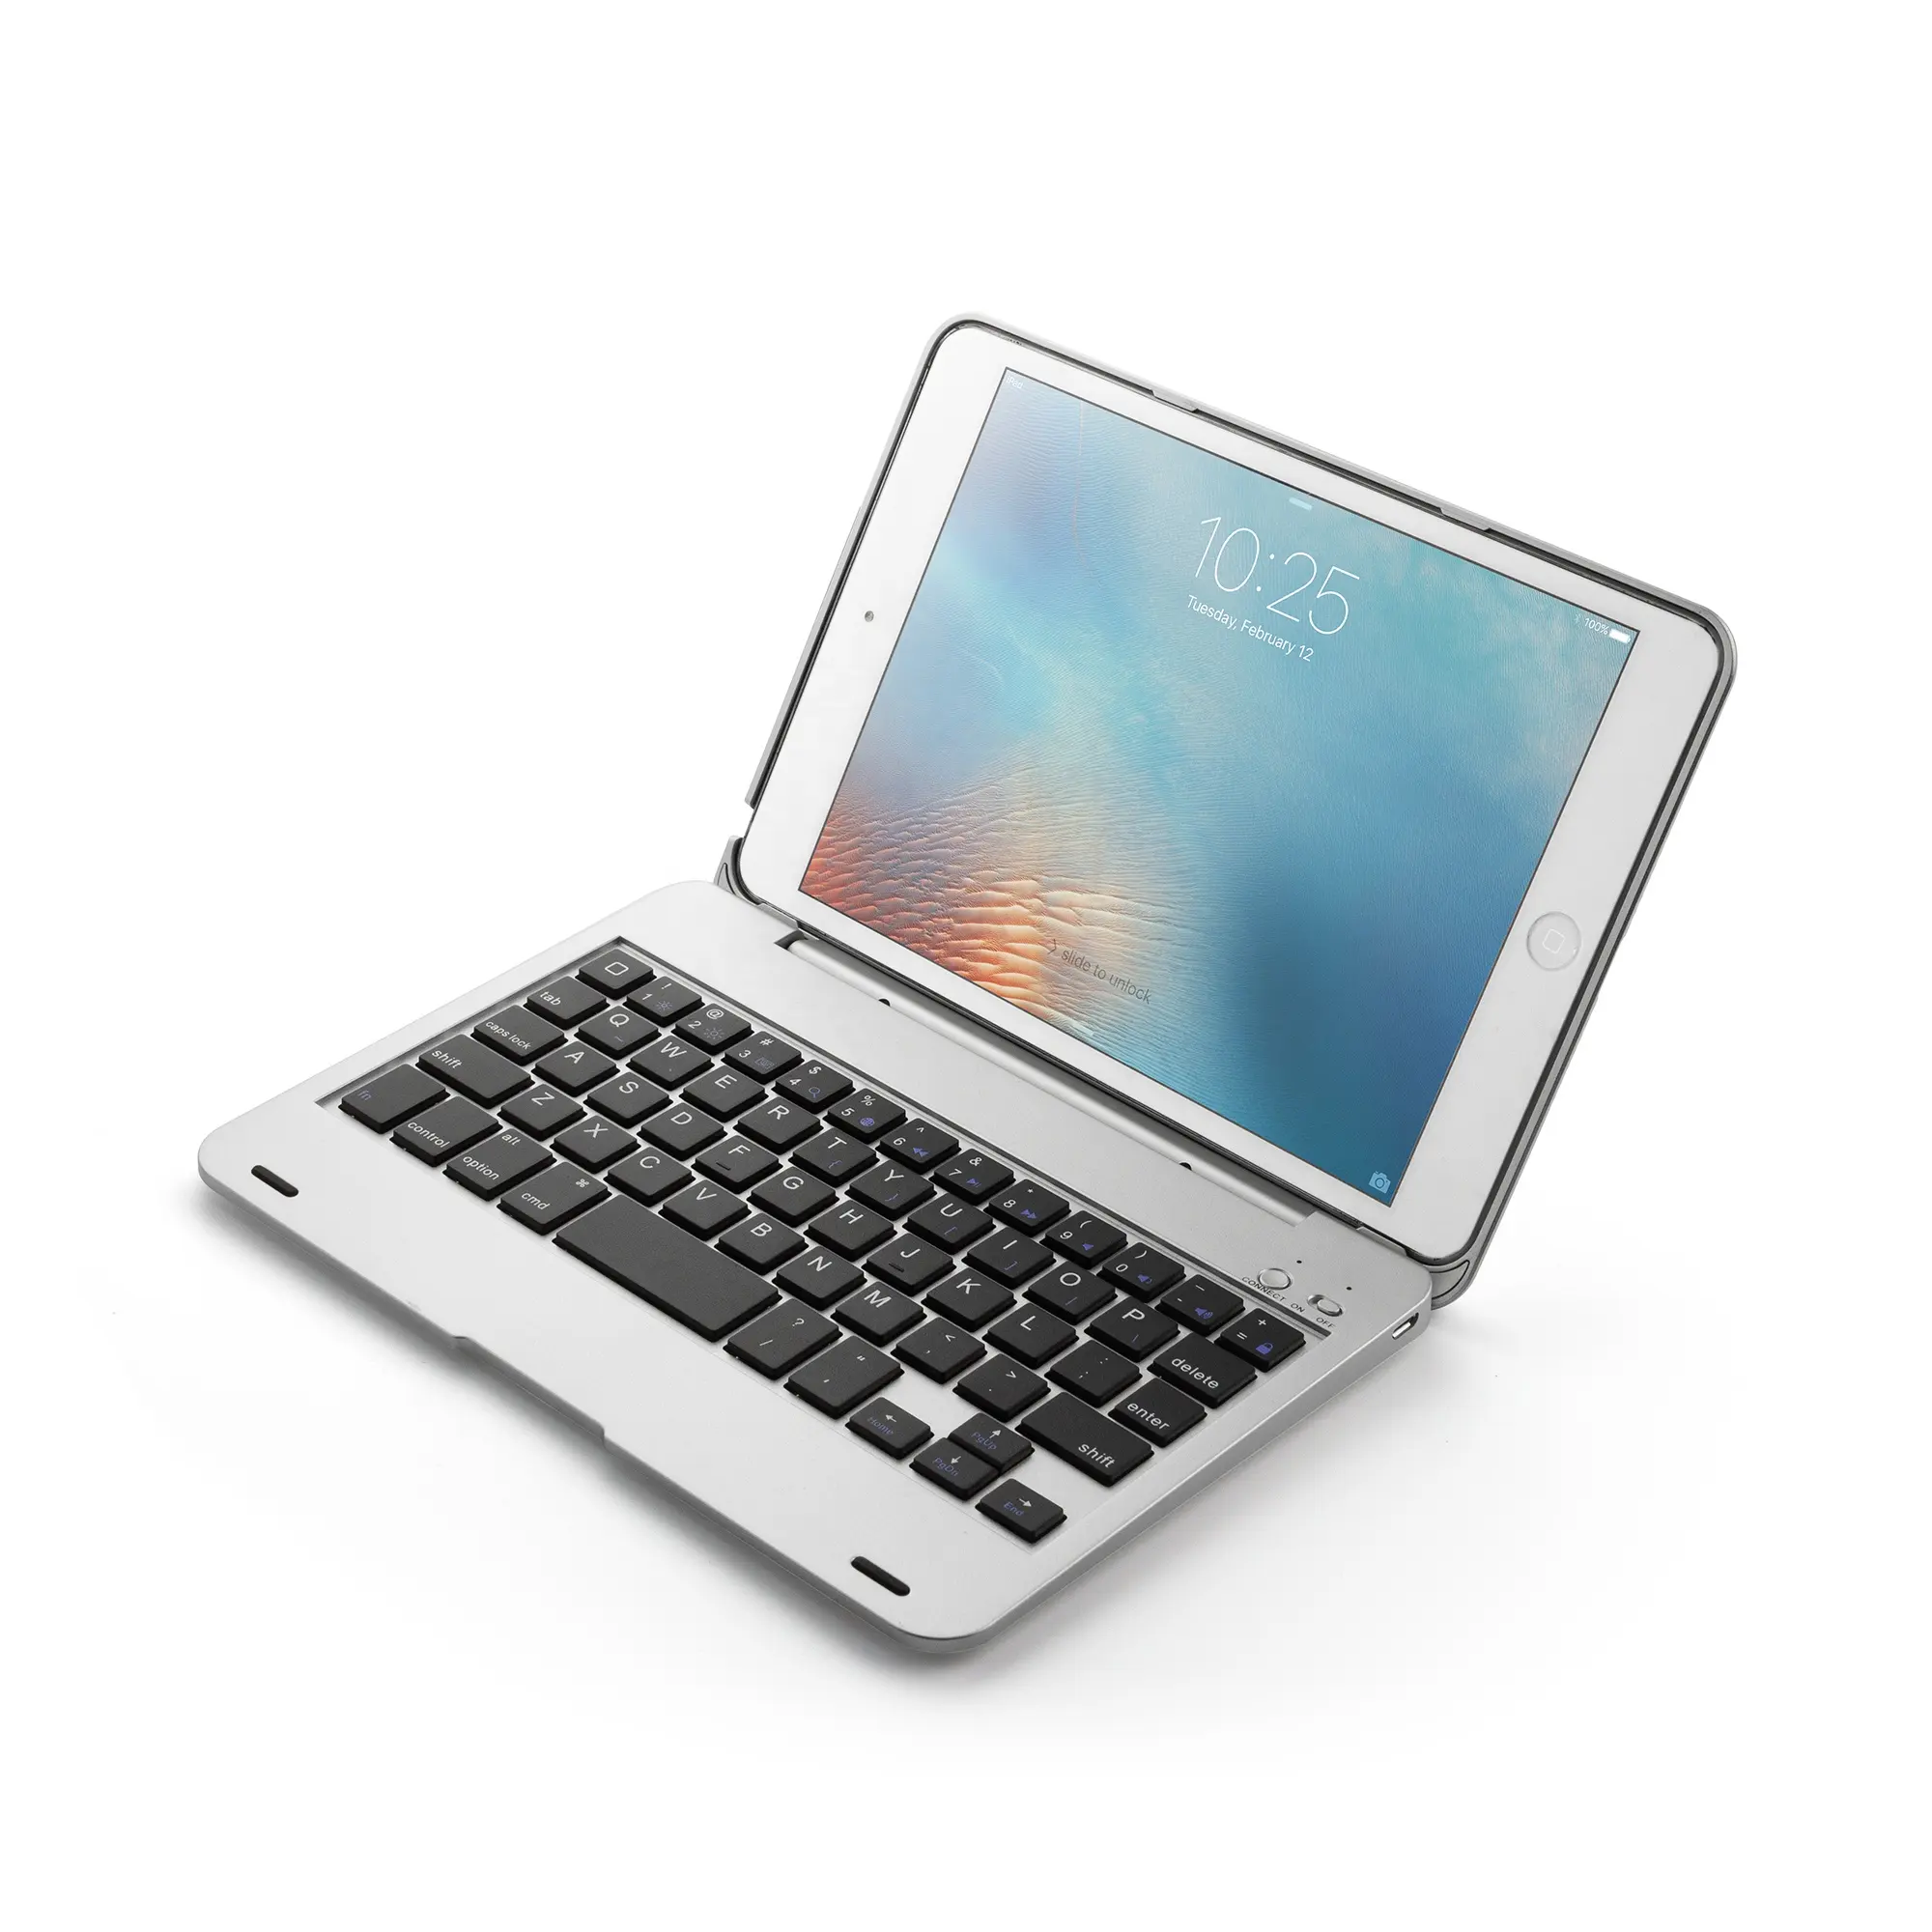 Высокое качество Классический планшет Беспроводная клавиатура чехол для iPad Mini 1/2/3 7,9 дюймов